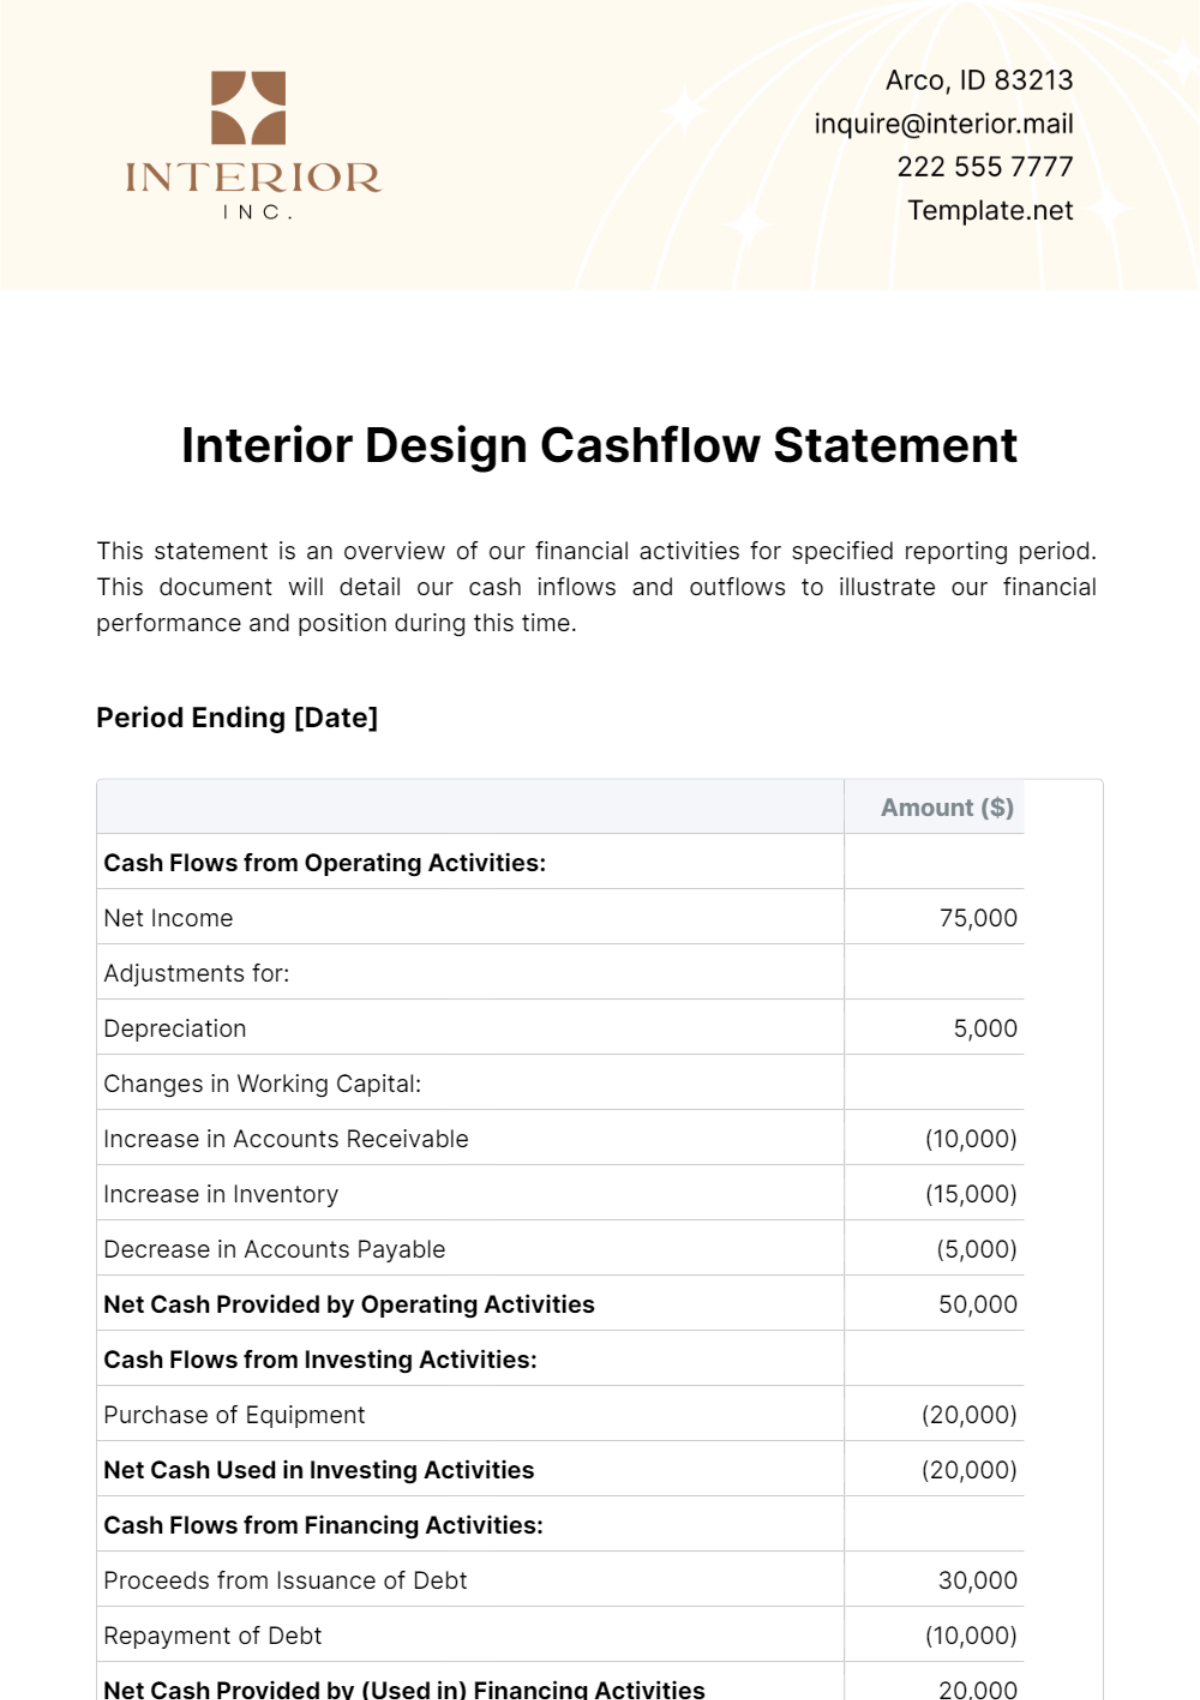 Interior Design Cashflow Statement Template